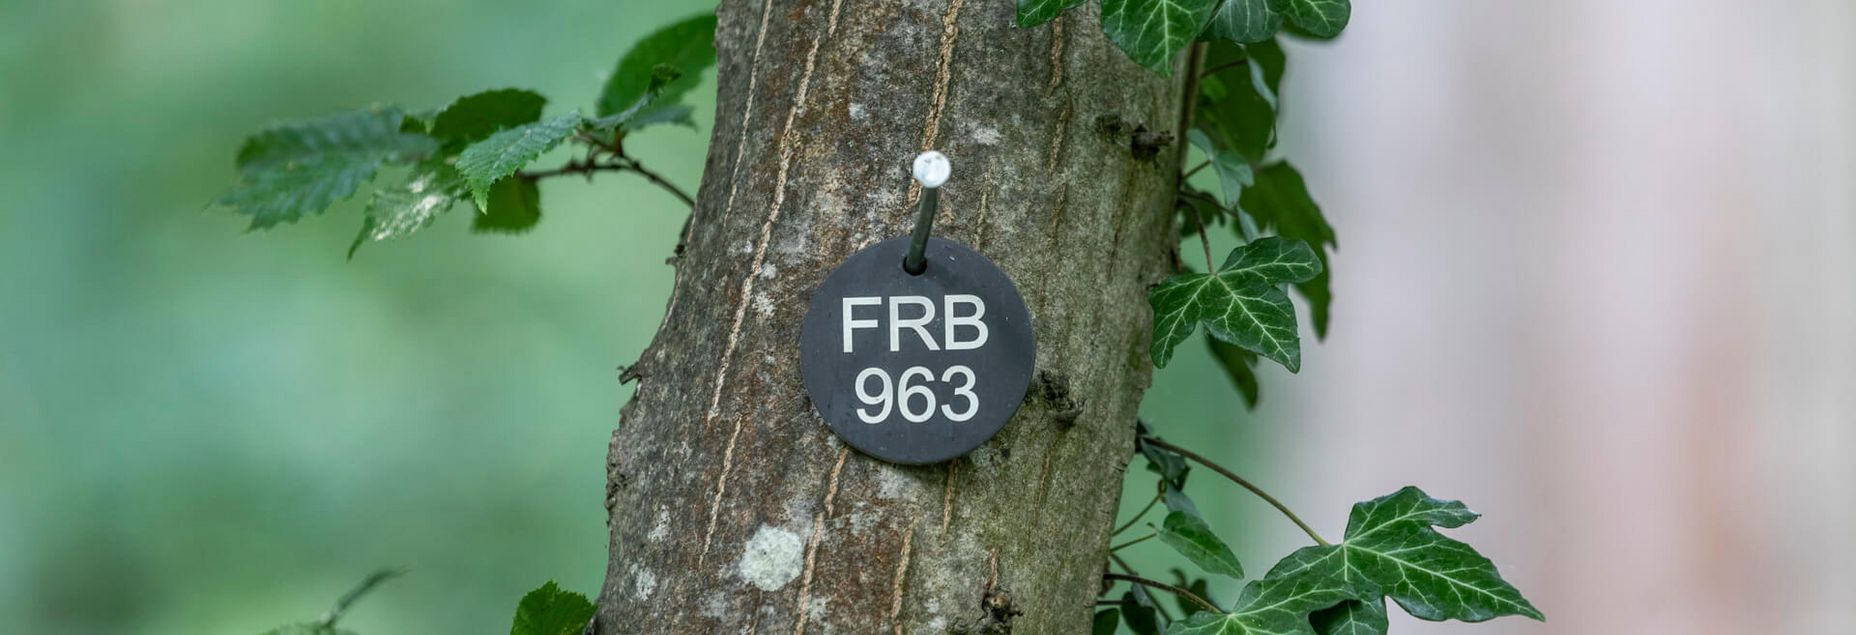 FRB 963 - plakette